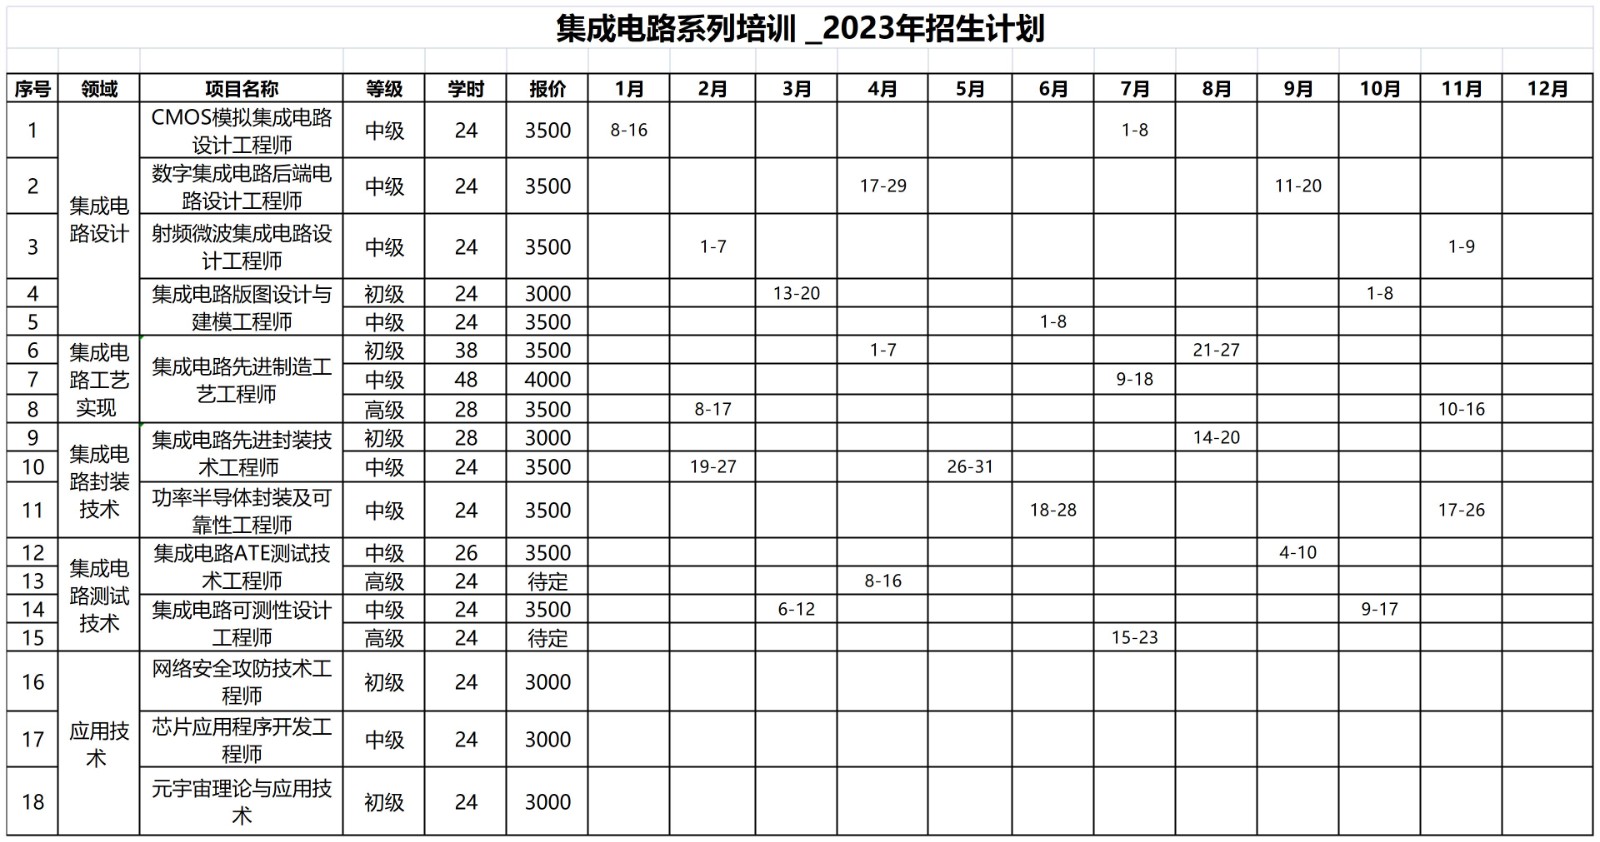 5_集成电路系列培训2023计划_Sheet1.jpg